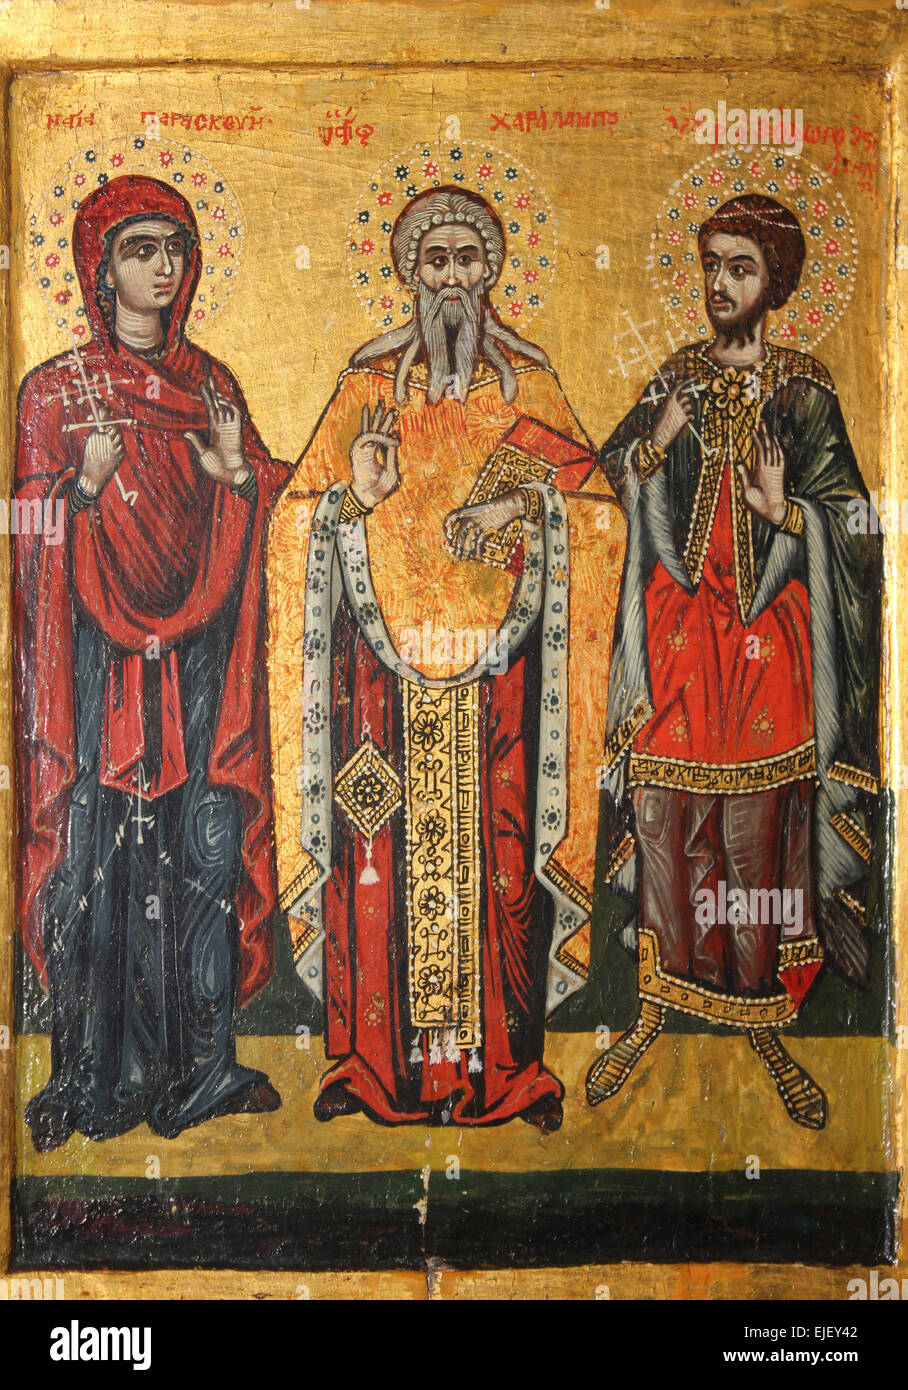 Santi greca Paraskevi, Charalampos e Theodore il generale Foto Stock